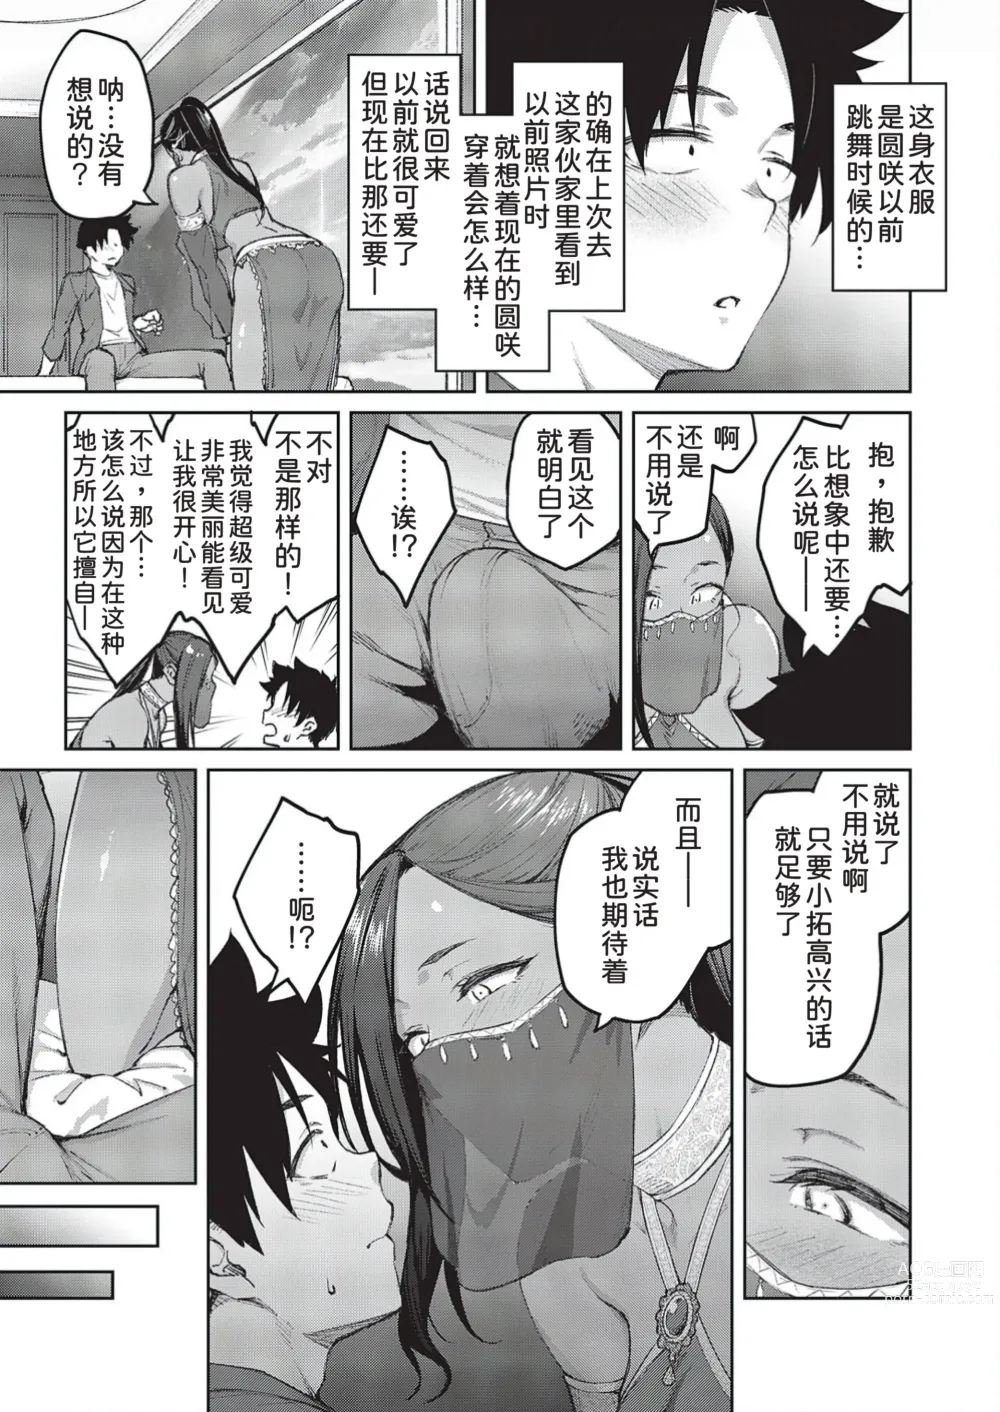 Page 4 of manga Tachiaoi 3